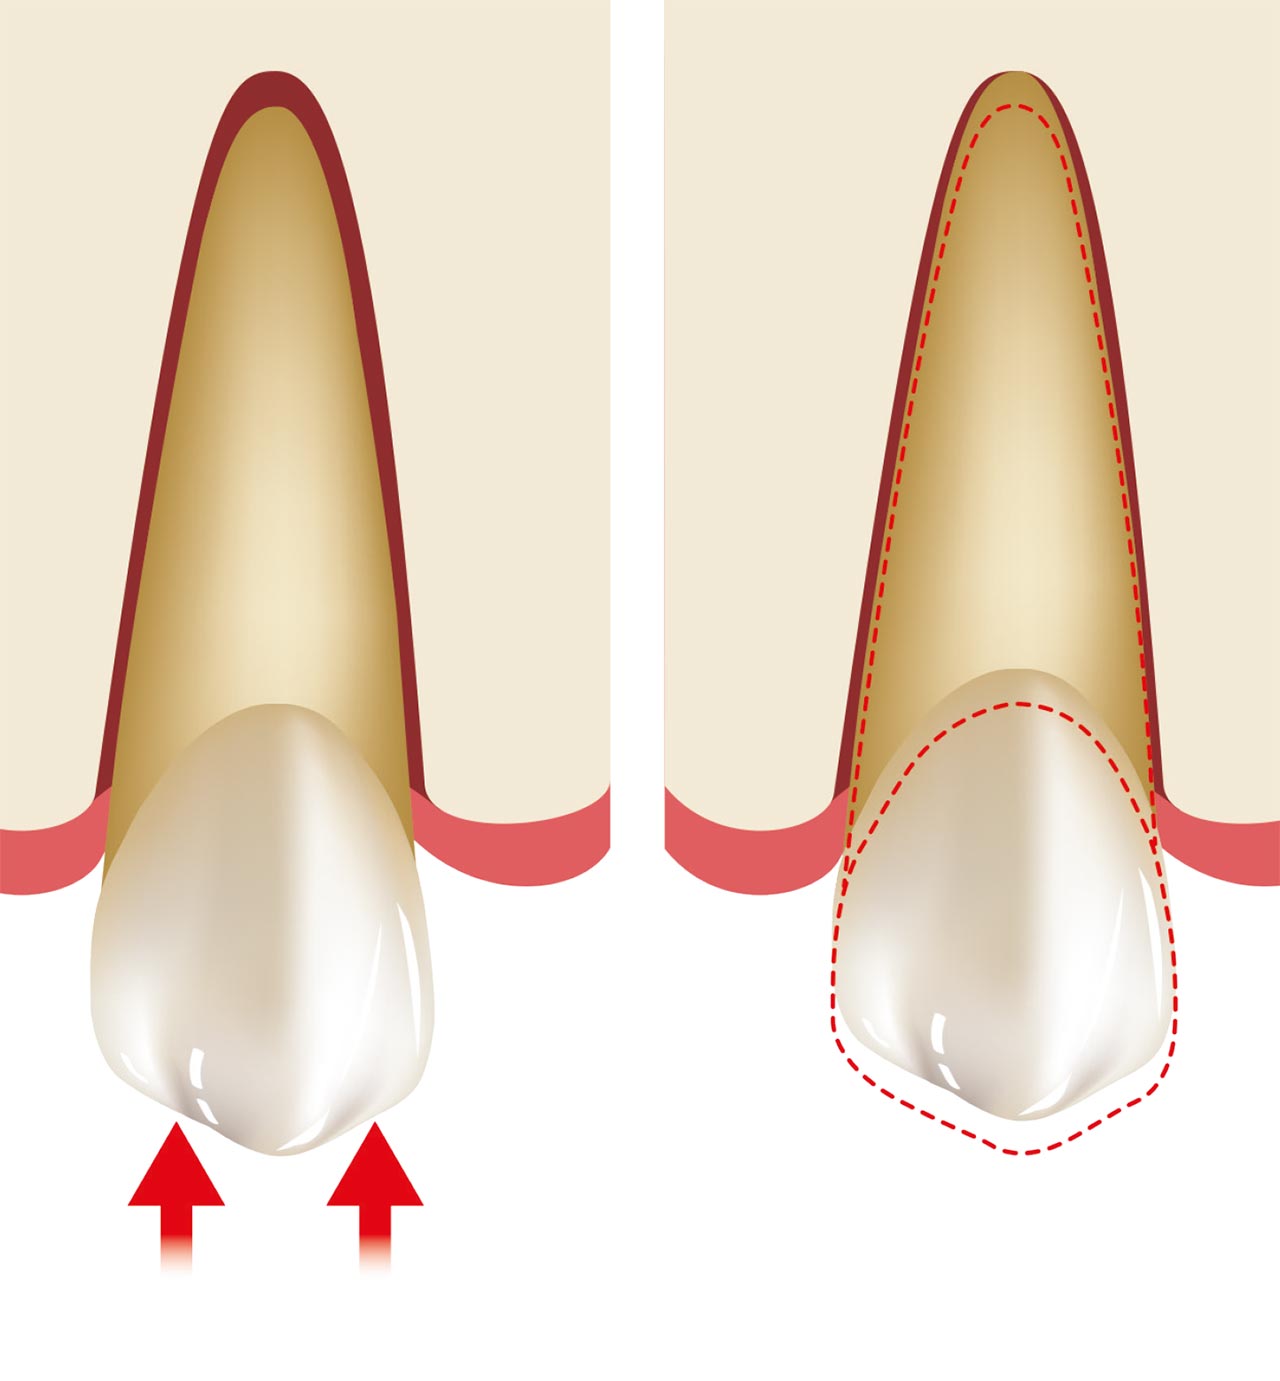 Abb. 3 Kräfte, die auf die Zähne wirken, führen zu einer Bewegung in zwei Phasen: Anfangsbewegungsphase, in der die Bewegung innerhalb der Grenzen des PDL liegt; ...